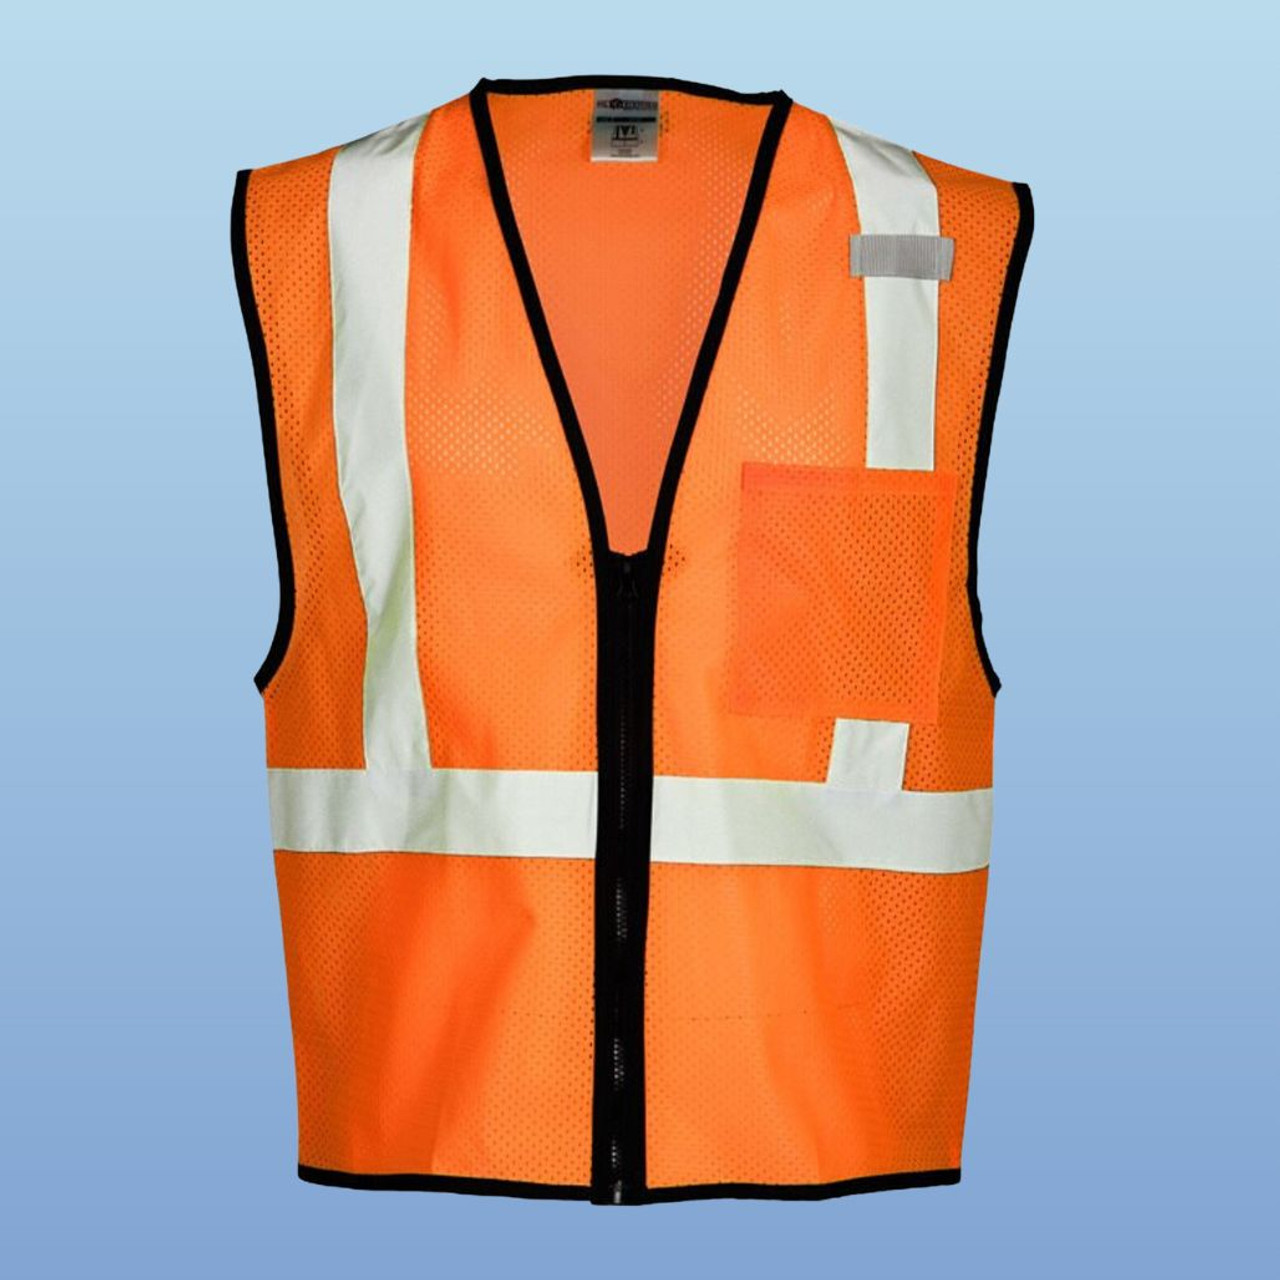 Kishgo 1520 Class Mesh Orange Safety Vest